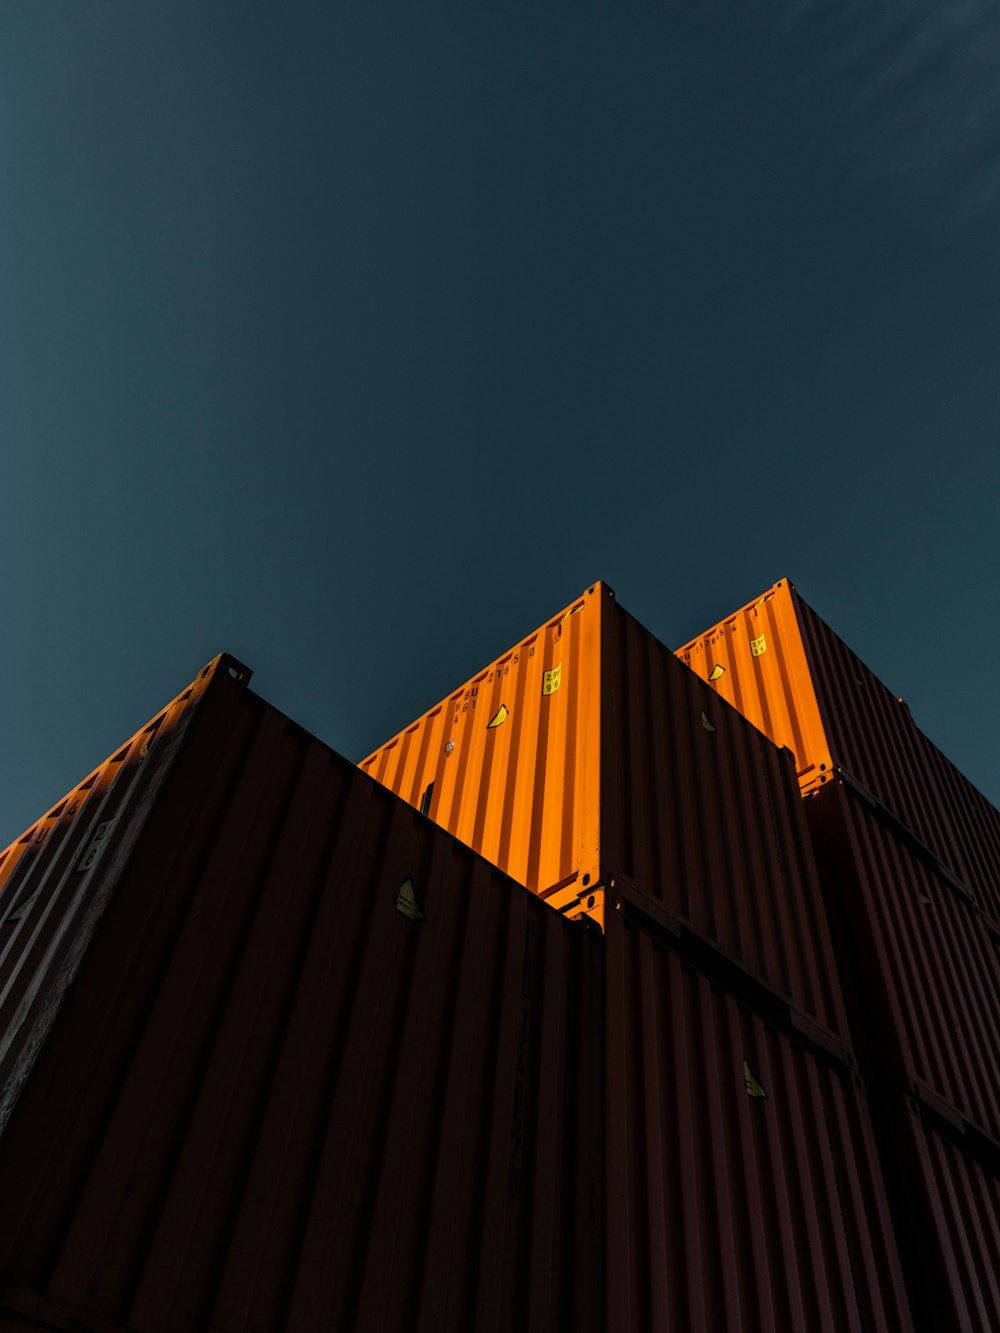 edificio naranja y negro bajo un cielo azul